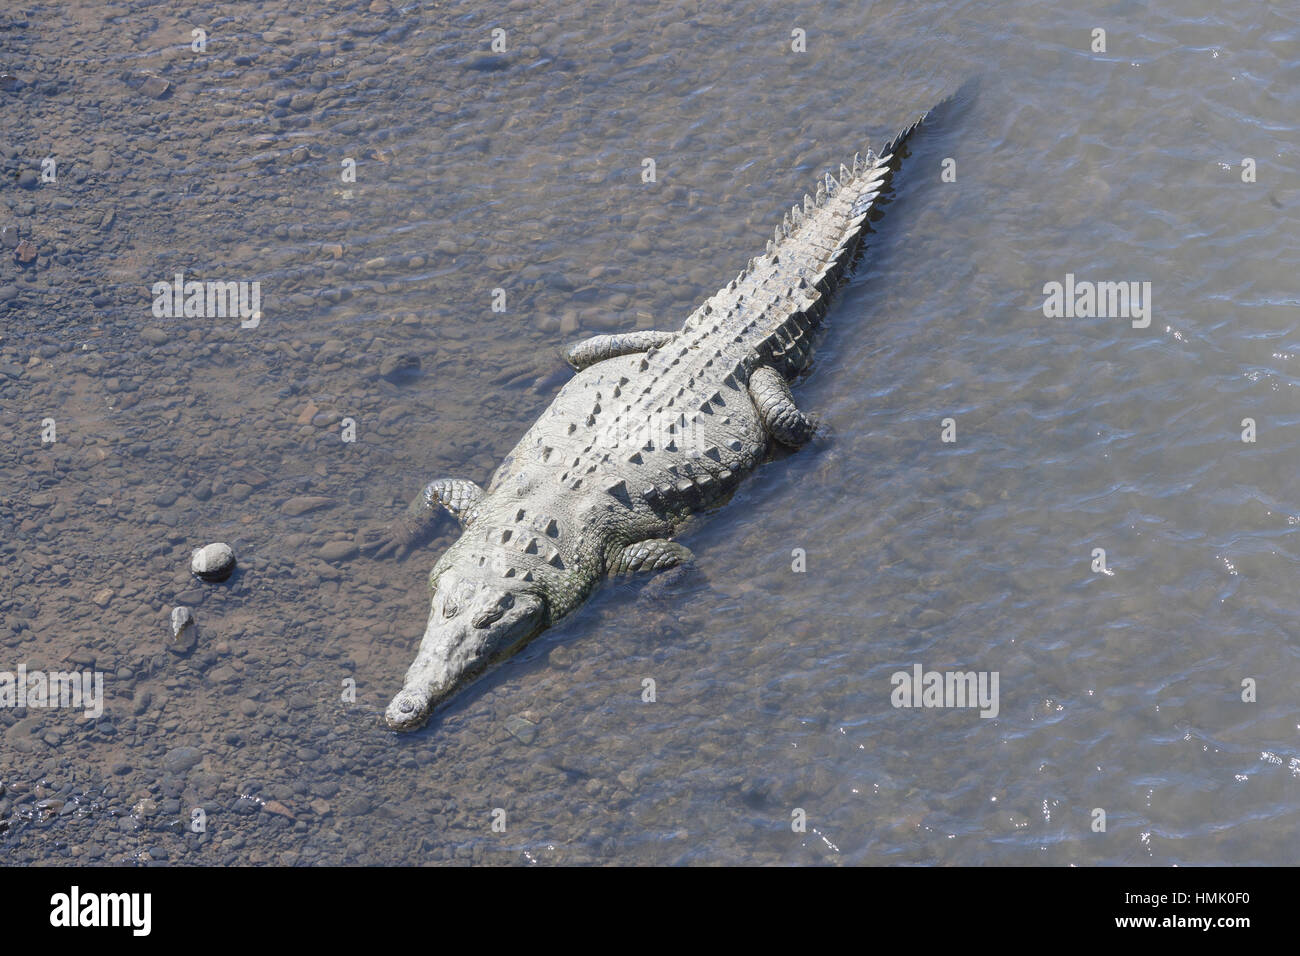 El cocodrilo americano (Crocodylus acutus) en agua, río Tárcoles, parque nacional Parque nacional Carara, costa rica Foto de stock